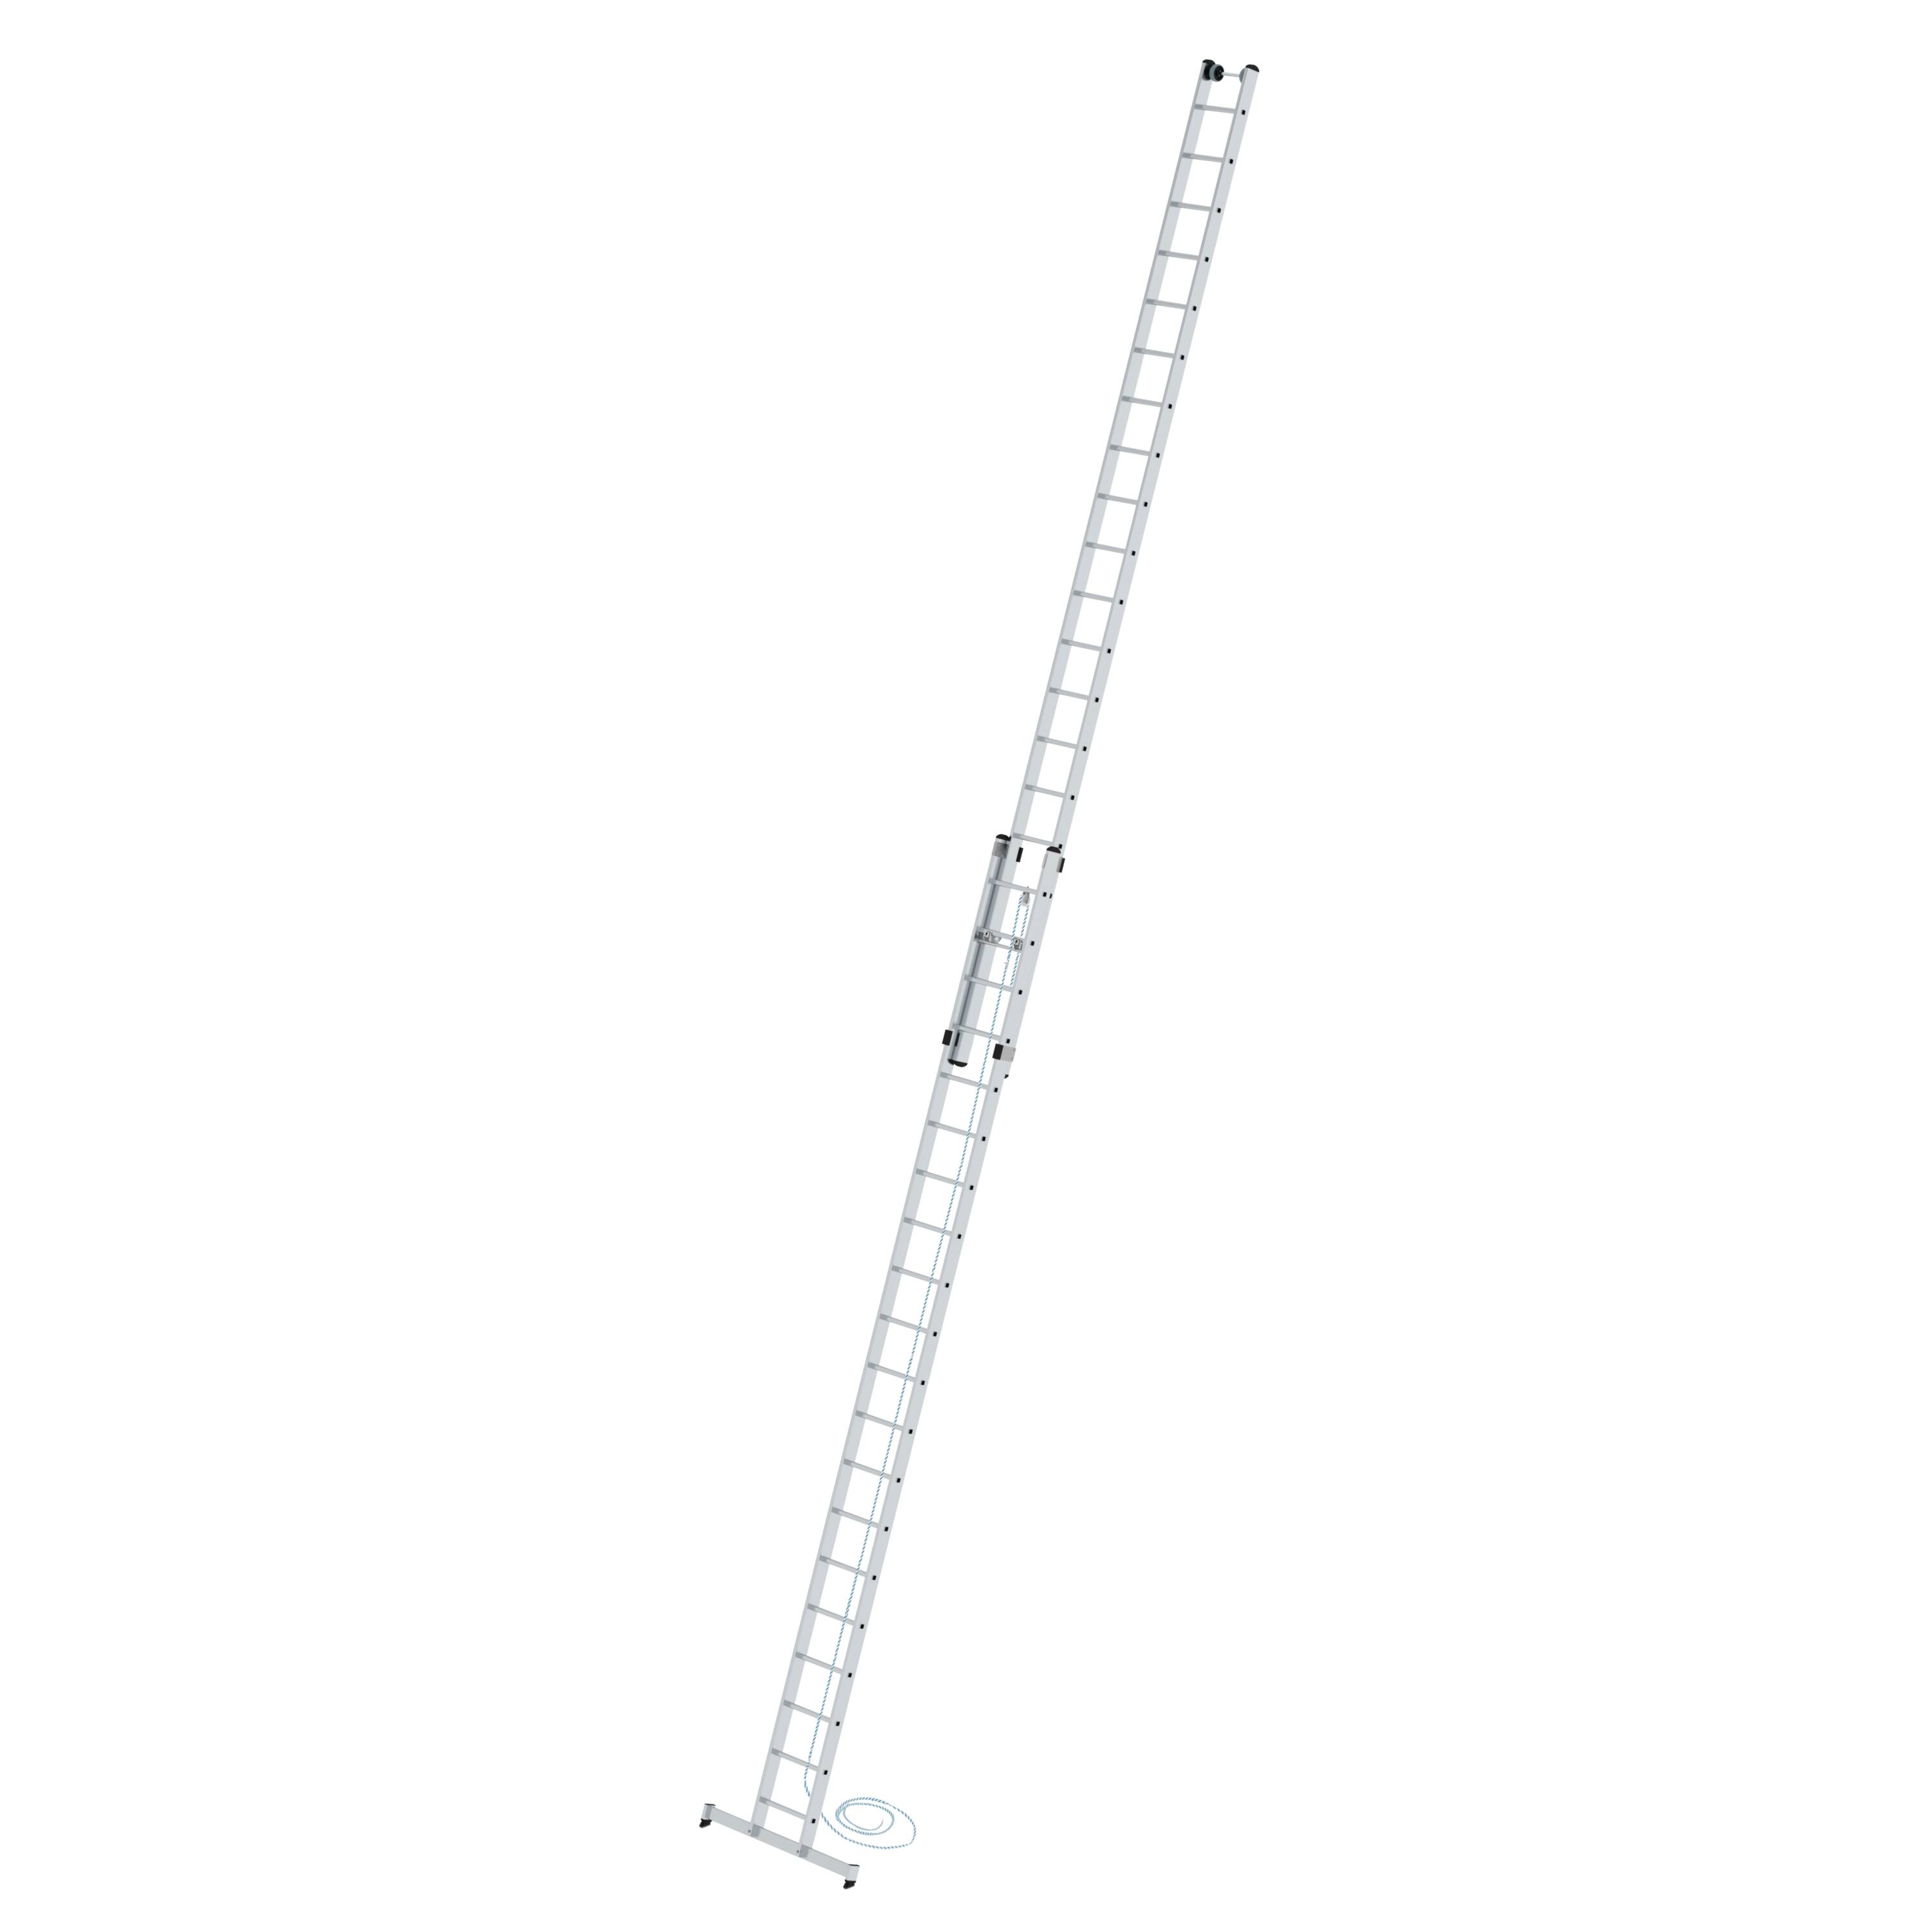 Sprossen-Seilzugleiter 2-teilig mit nivello®-Traverse 2x20 Sprossen